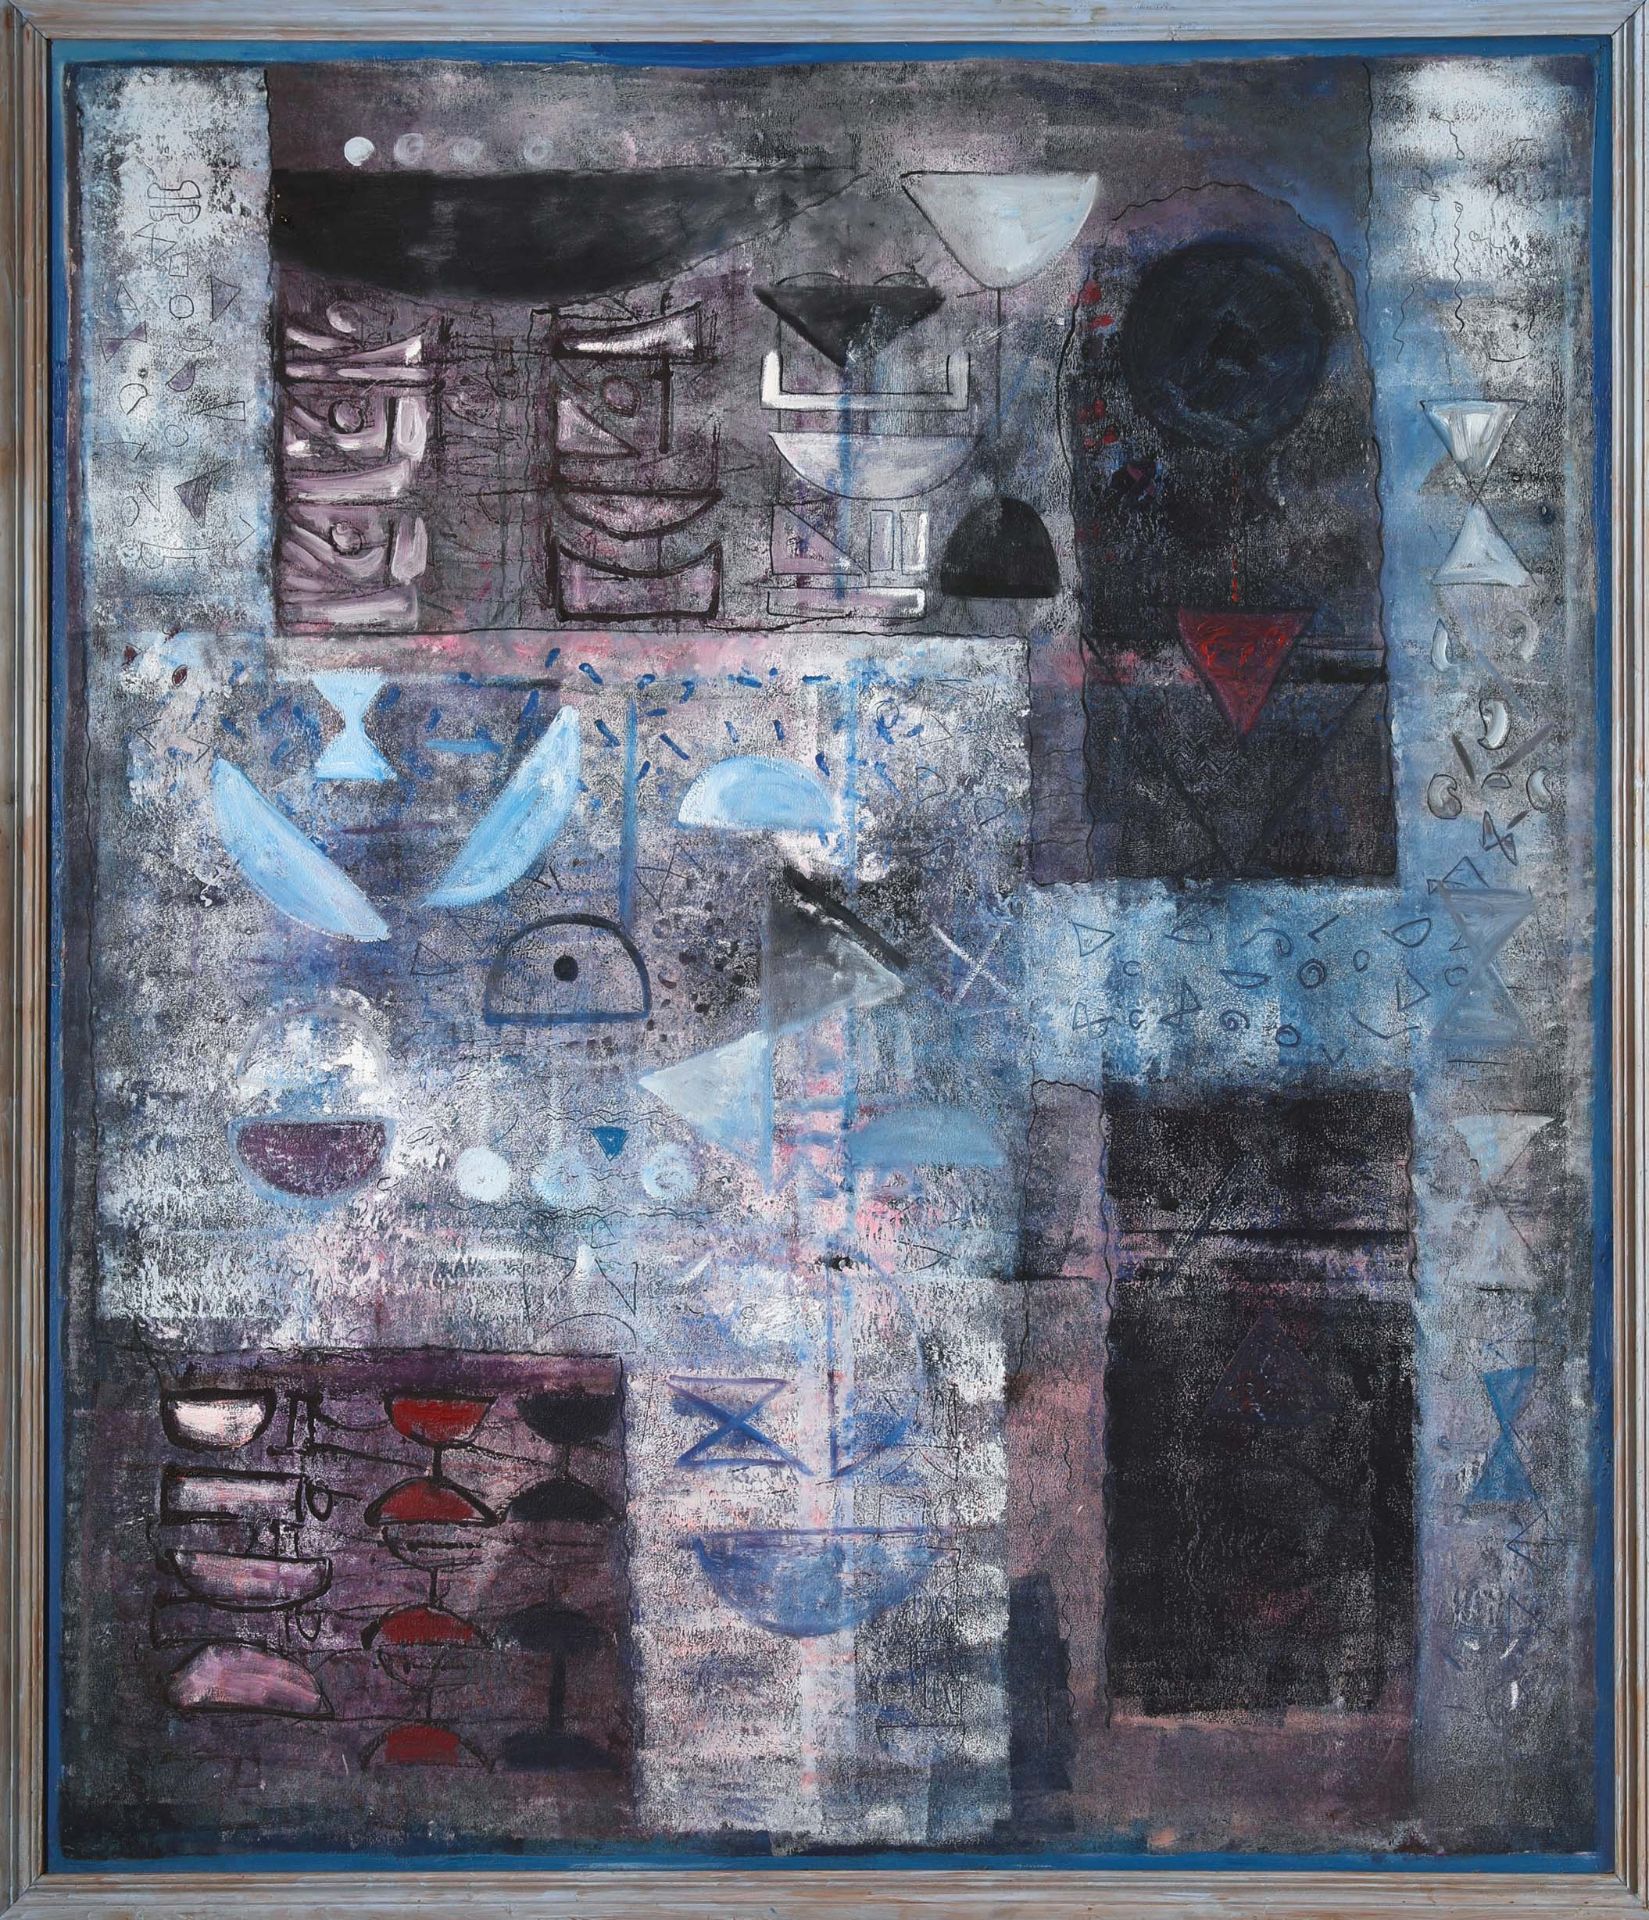 Hemraj, Metamorphosis, 1992, 180 x 150 cm, Oil on canvas